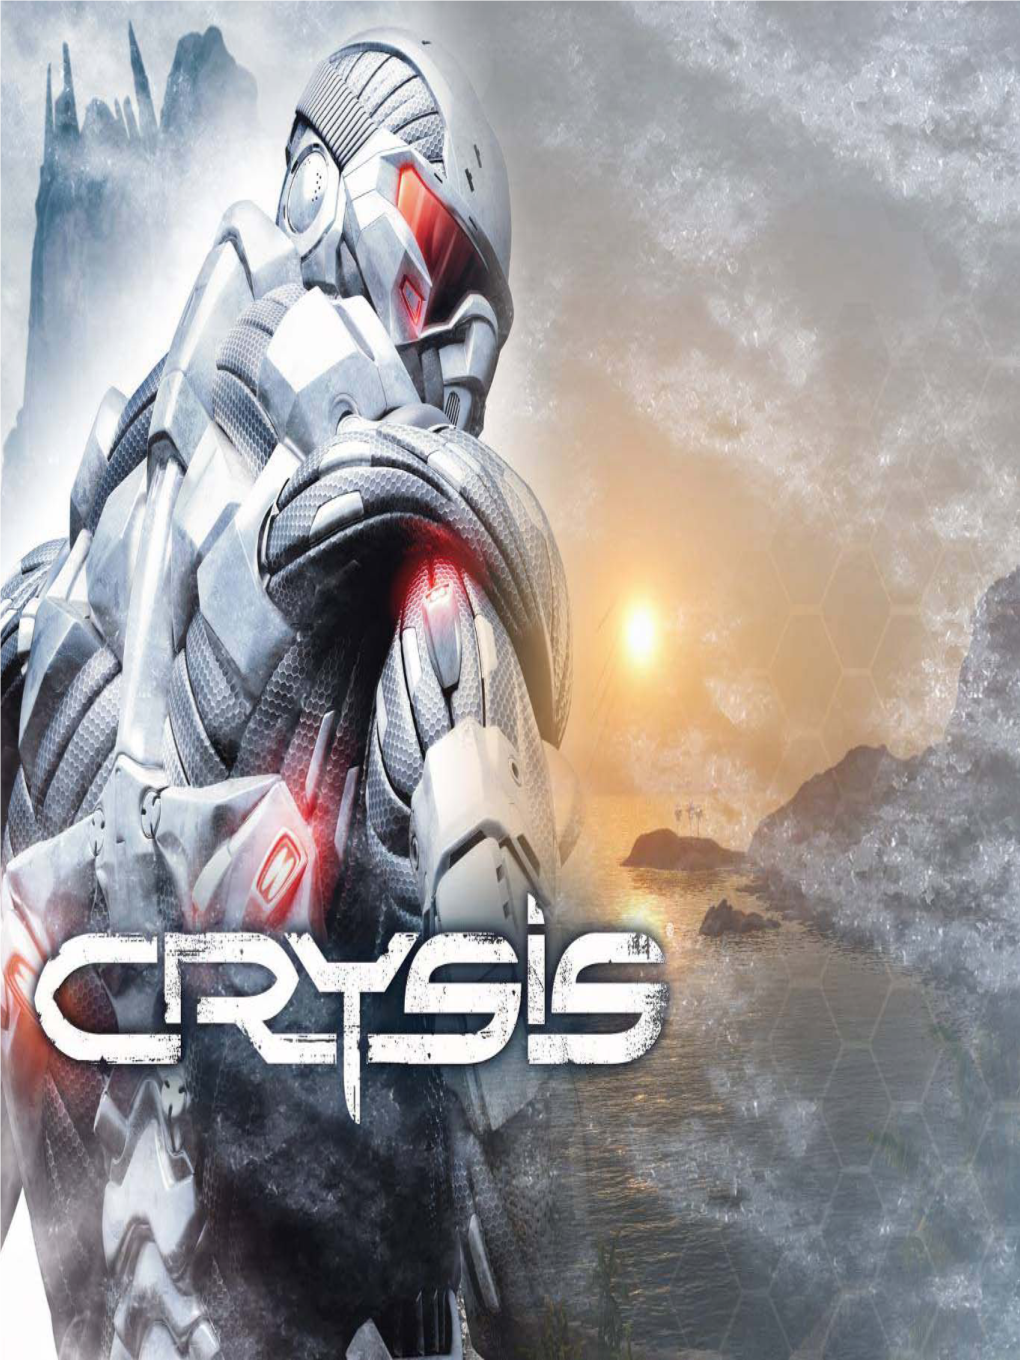 Making of Crysis